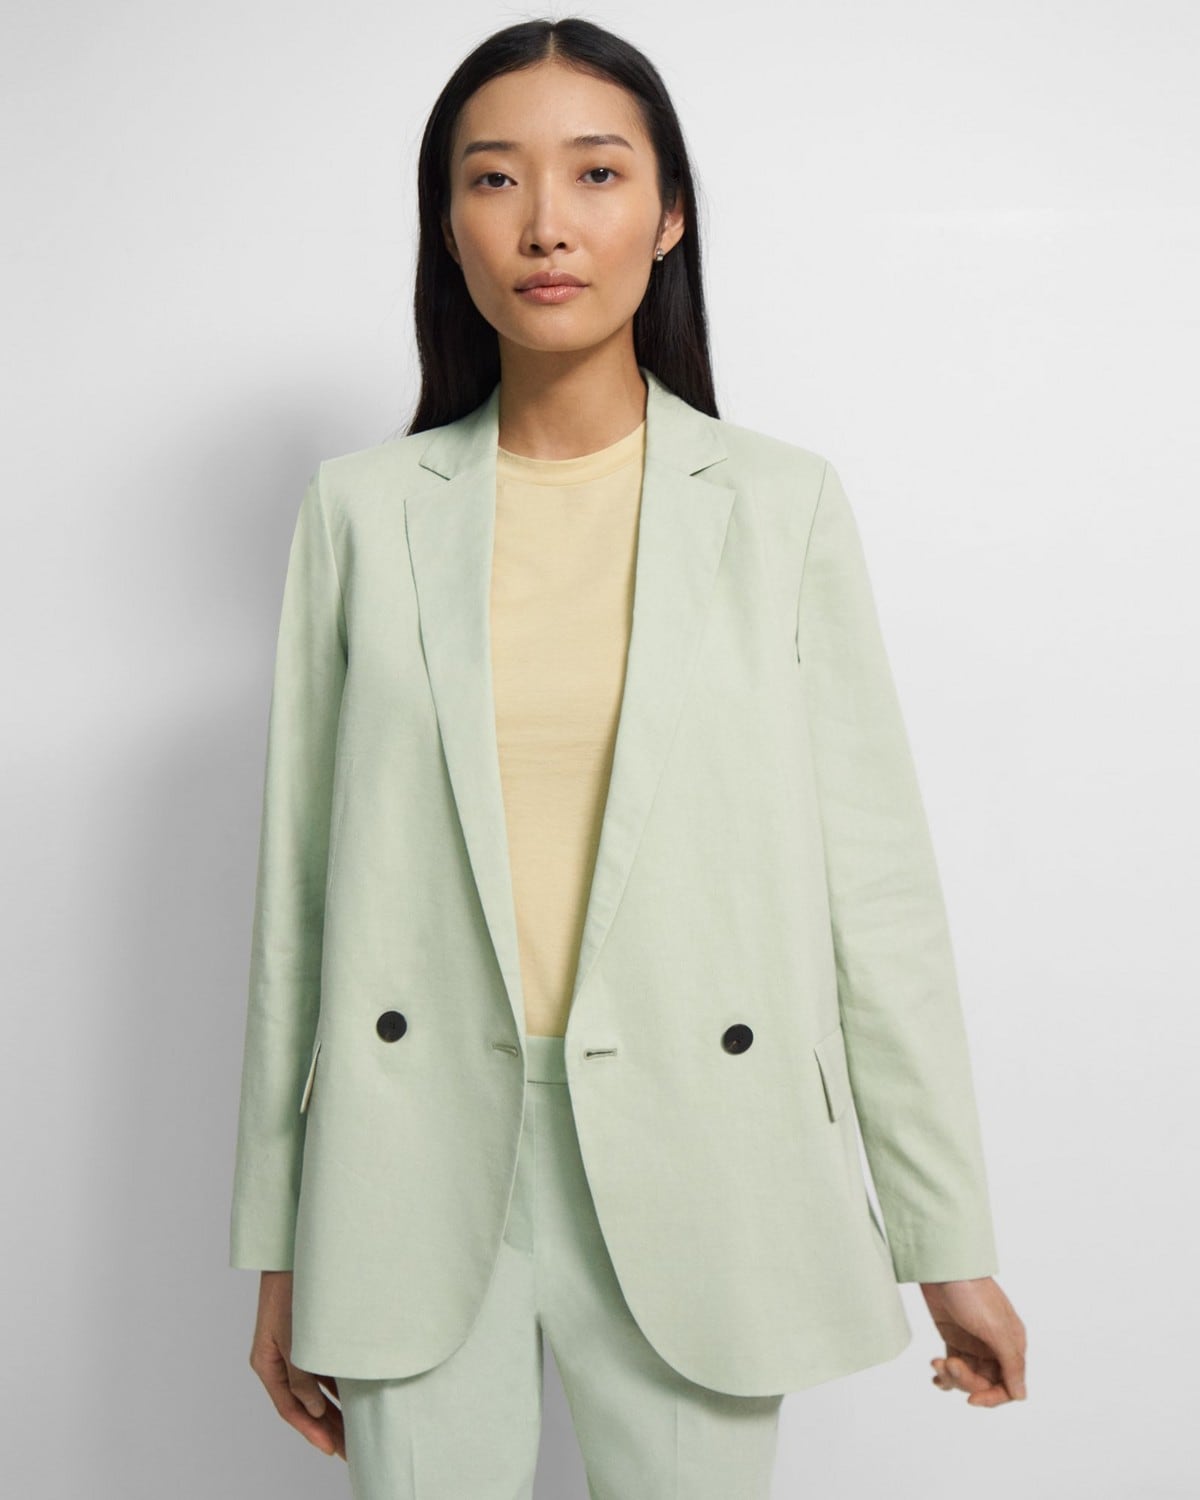 June Womens Long Suit Vest Sleeveless Blazer Jacket Work Office Wear Waistcoat Cardigans 